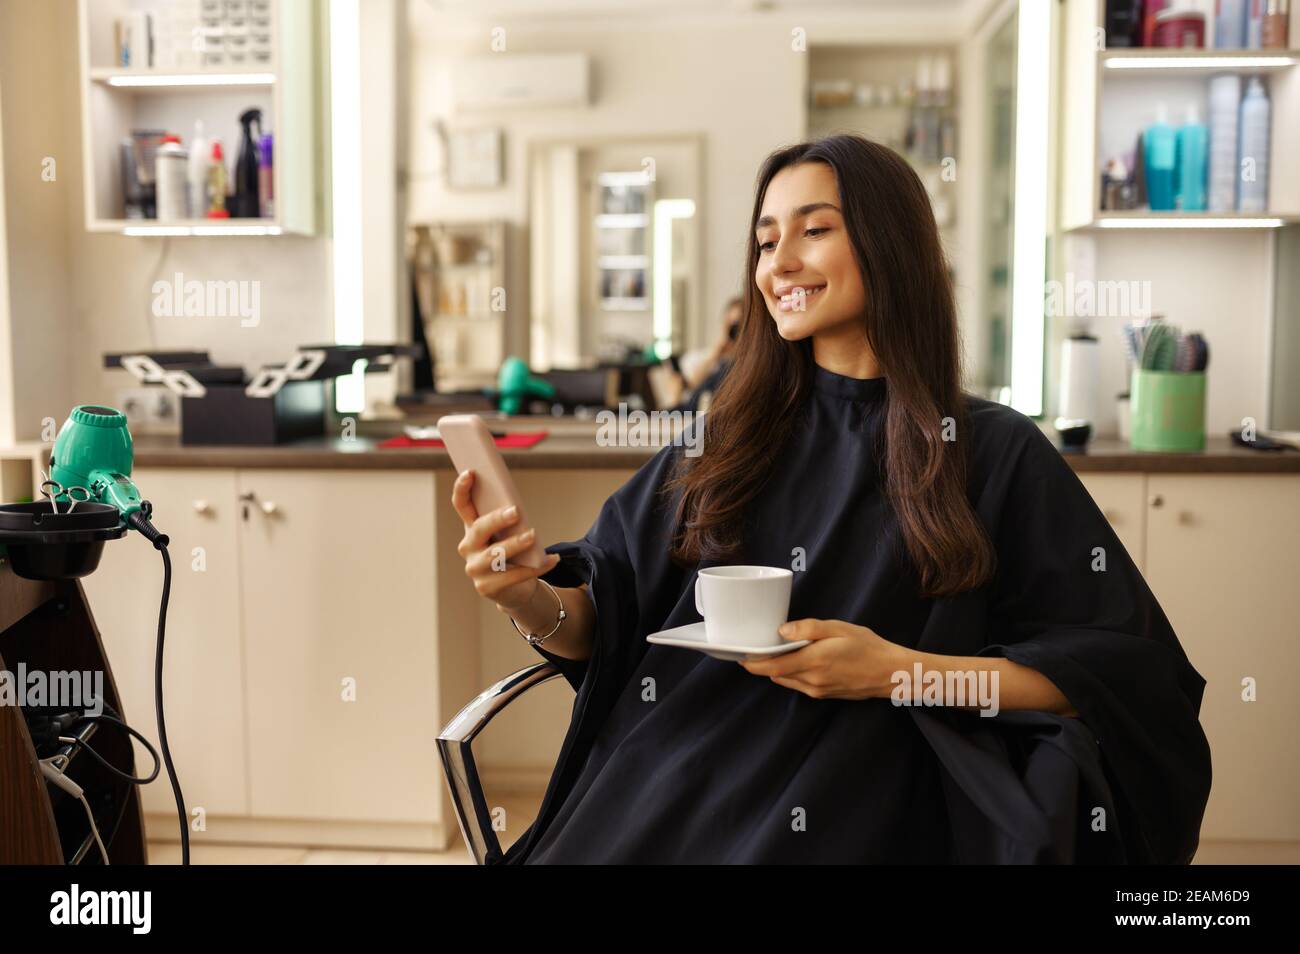 Client féminin avec téléphone et café, salon de coiffure Banque D'Images